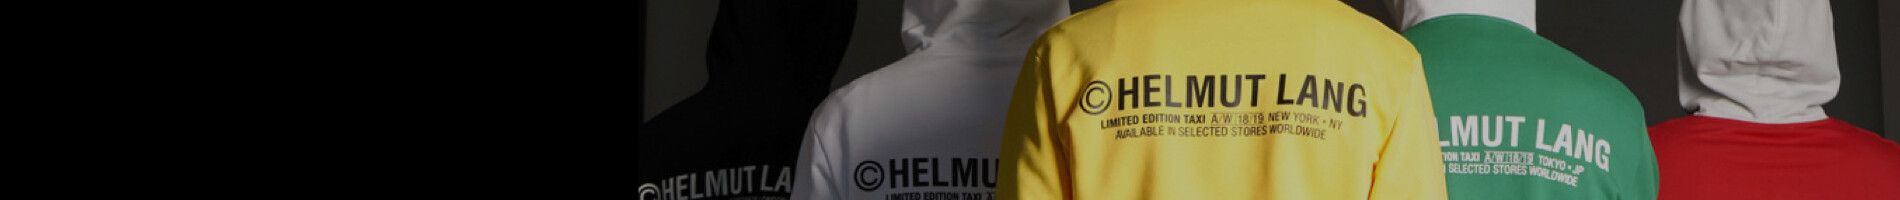 Helmut Lang Men's Leggings Banner